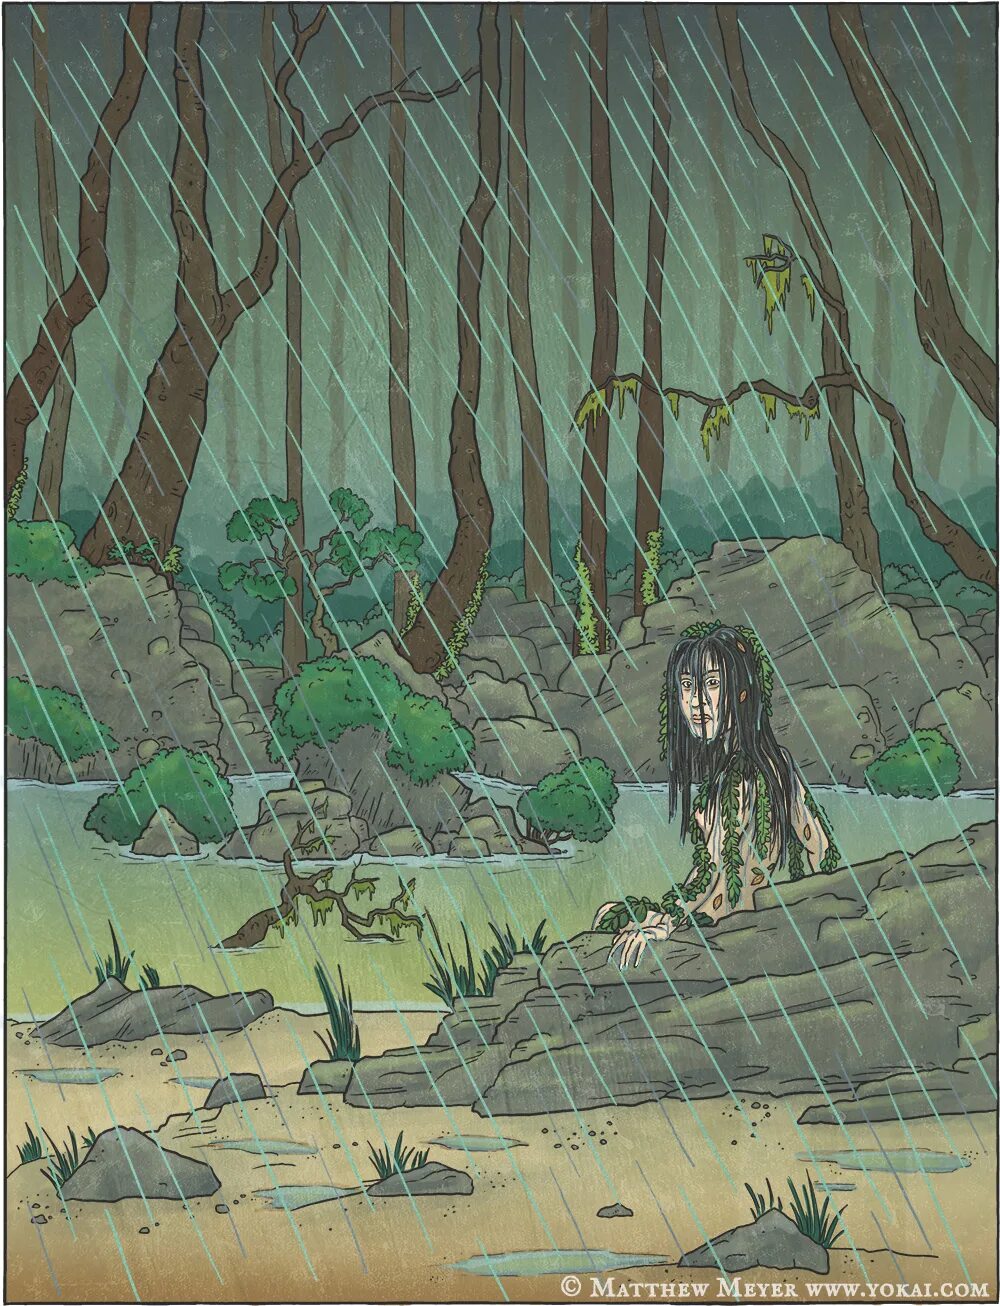 Matthew meier. Нурэ-Онна Нурэ-Онна. Нурэ-Онна японская мифология. Легенда ивы арты. Дом в болоте японская мифология.